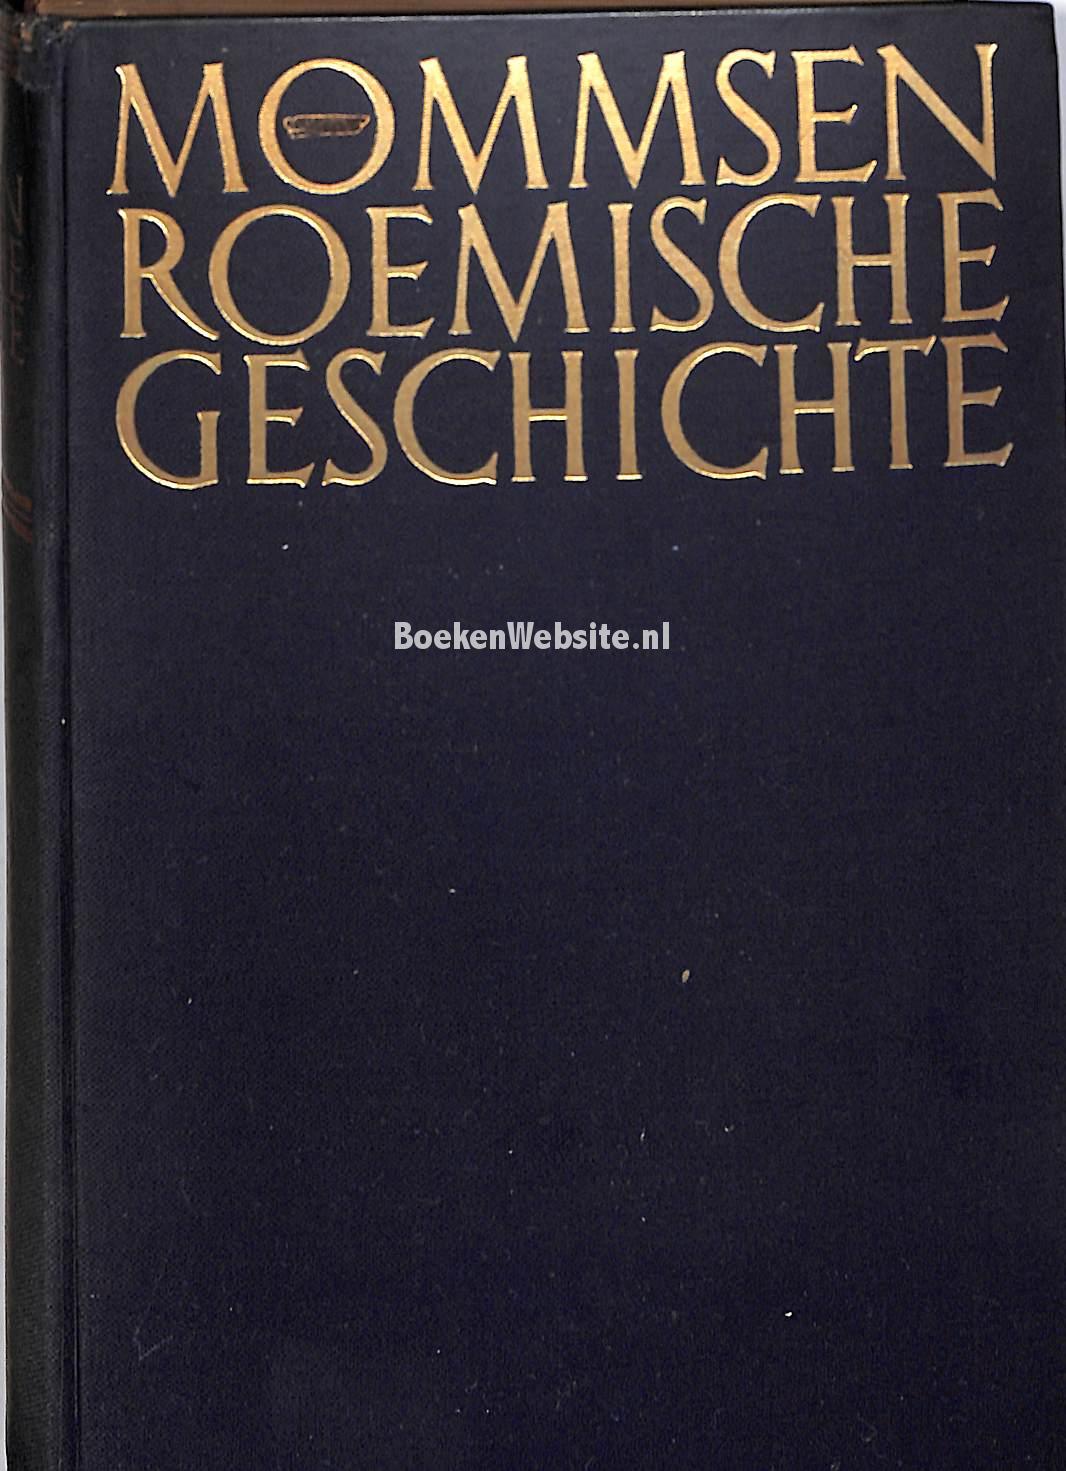 Römische Geschichte, Mommsen Theodor | Boeken Website.nl